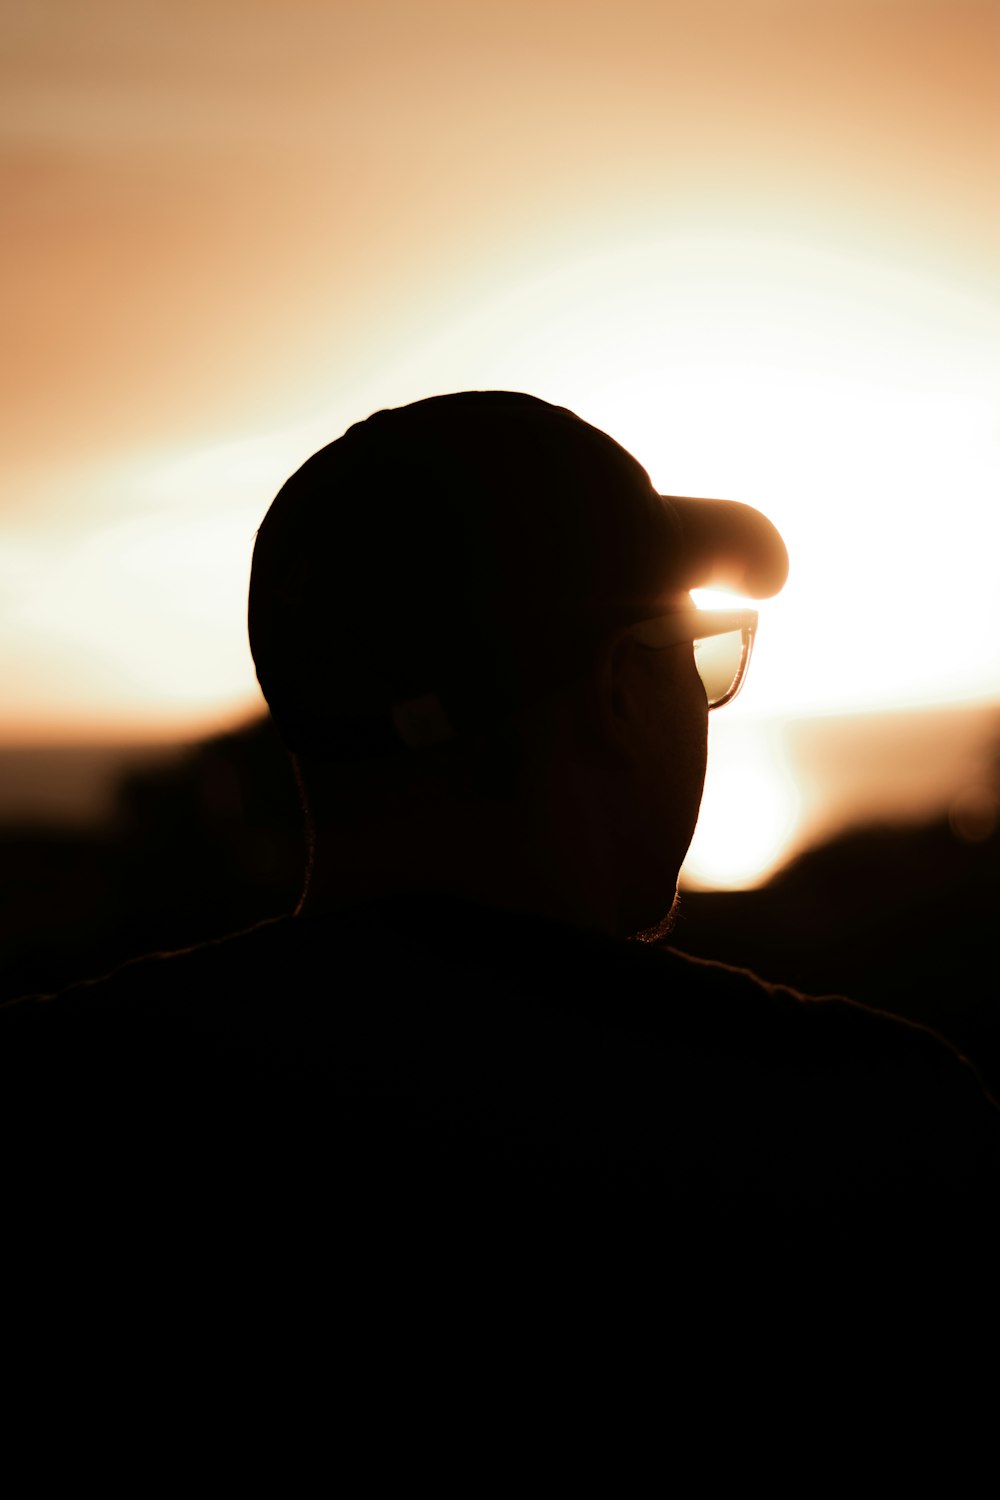 Silueta de hombre con gafas de sol durante la puesta del sol